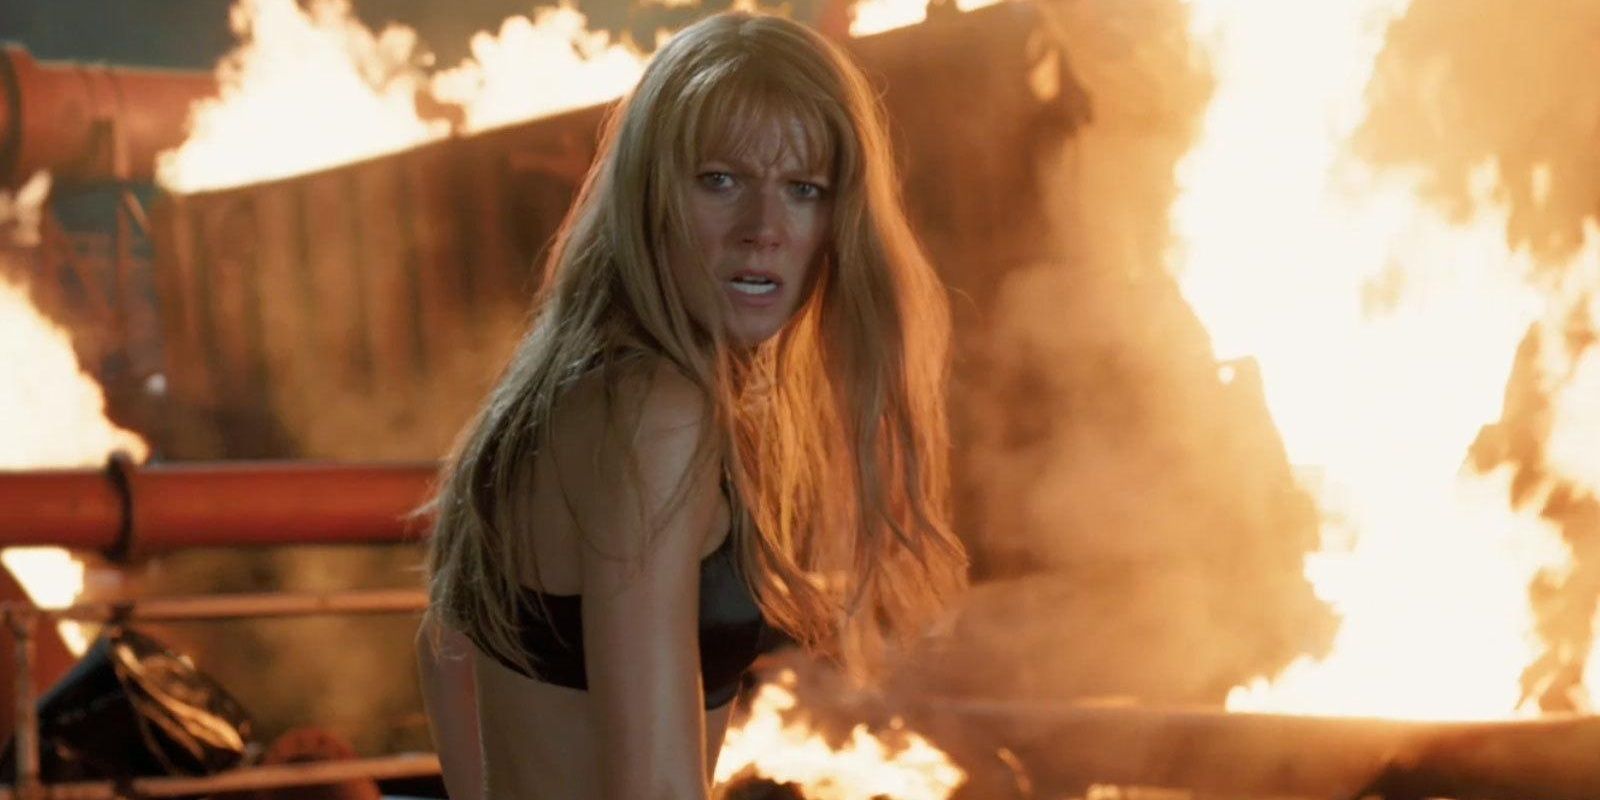 Gwyneth Paltrow in Iron Man 3